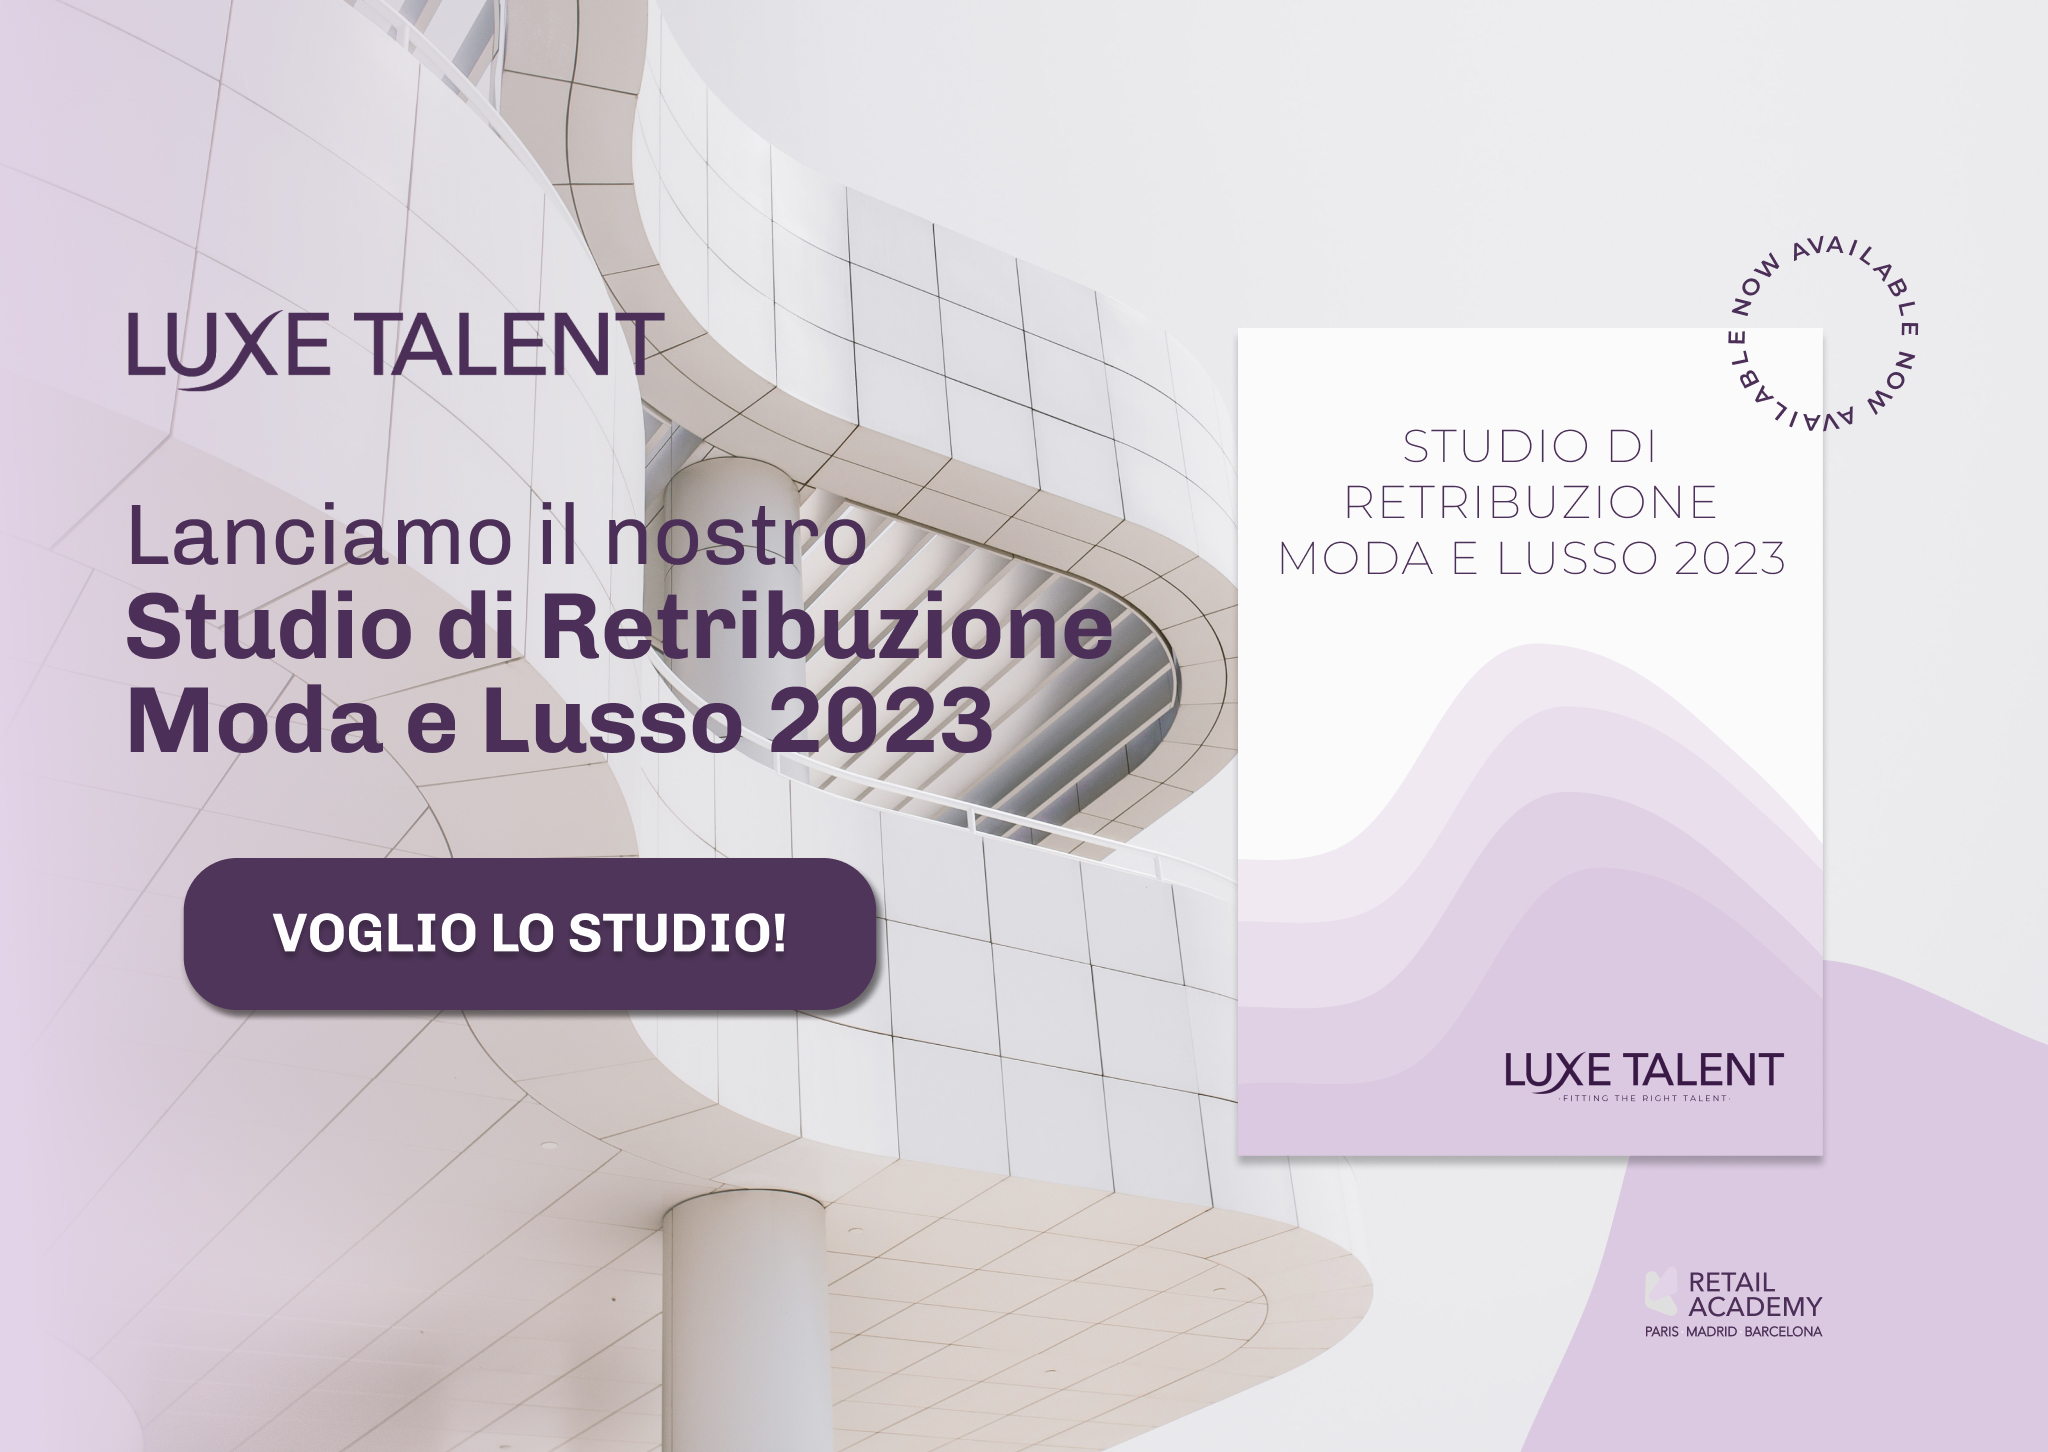 Studio di Retribuzione Moda e Lusso 2023 by Luxe Talent Consulenza Internazionale di Reclutamento e Formazione